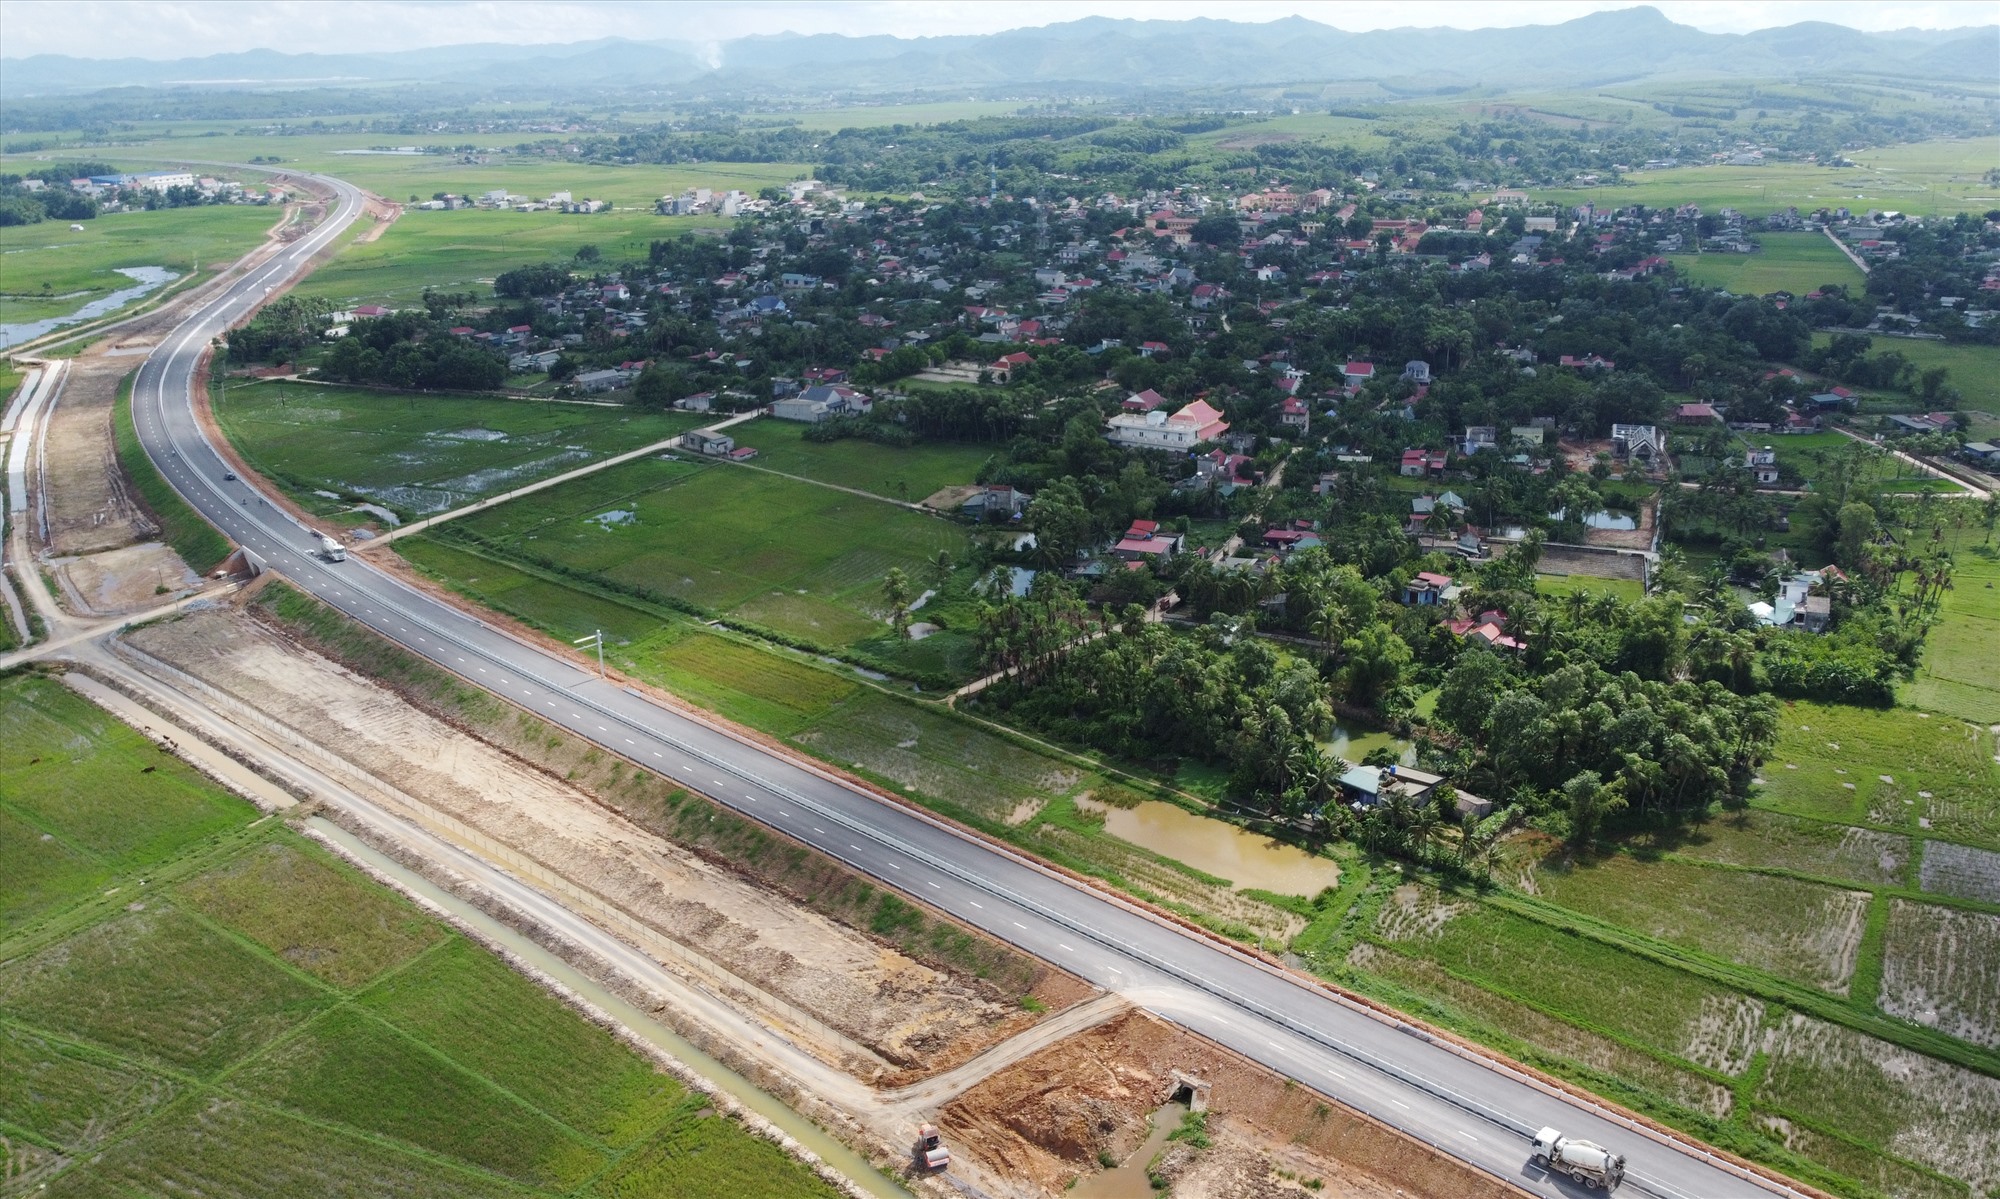 Cao tốc Quốc lộ 45 - Nghi Sơn có chiều dài hơn 43,2 km đi qua địa bàn tỉnh Thanh Hóa, với tổng mức đầu tư hơn 5.530 tỉ đồng. Ảnh: Quách Du